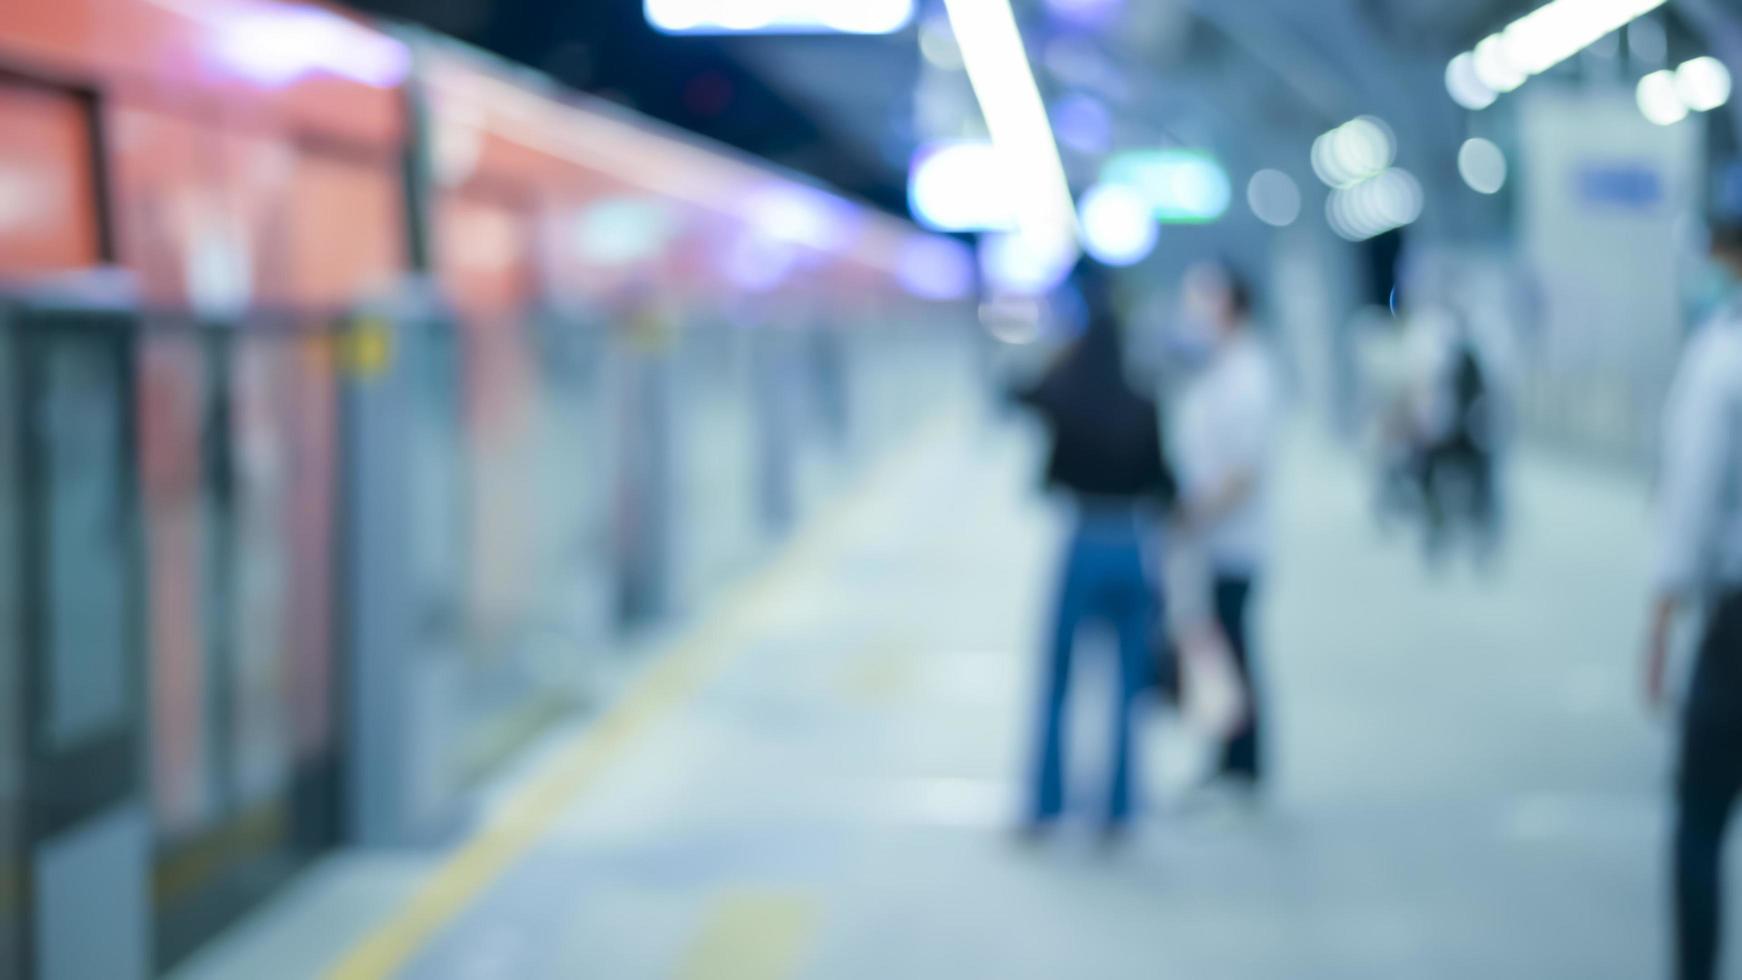 arrière-plan flou abstrait de la station de métro, vie urbaine et concept de transport public photo